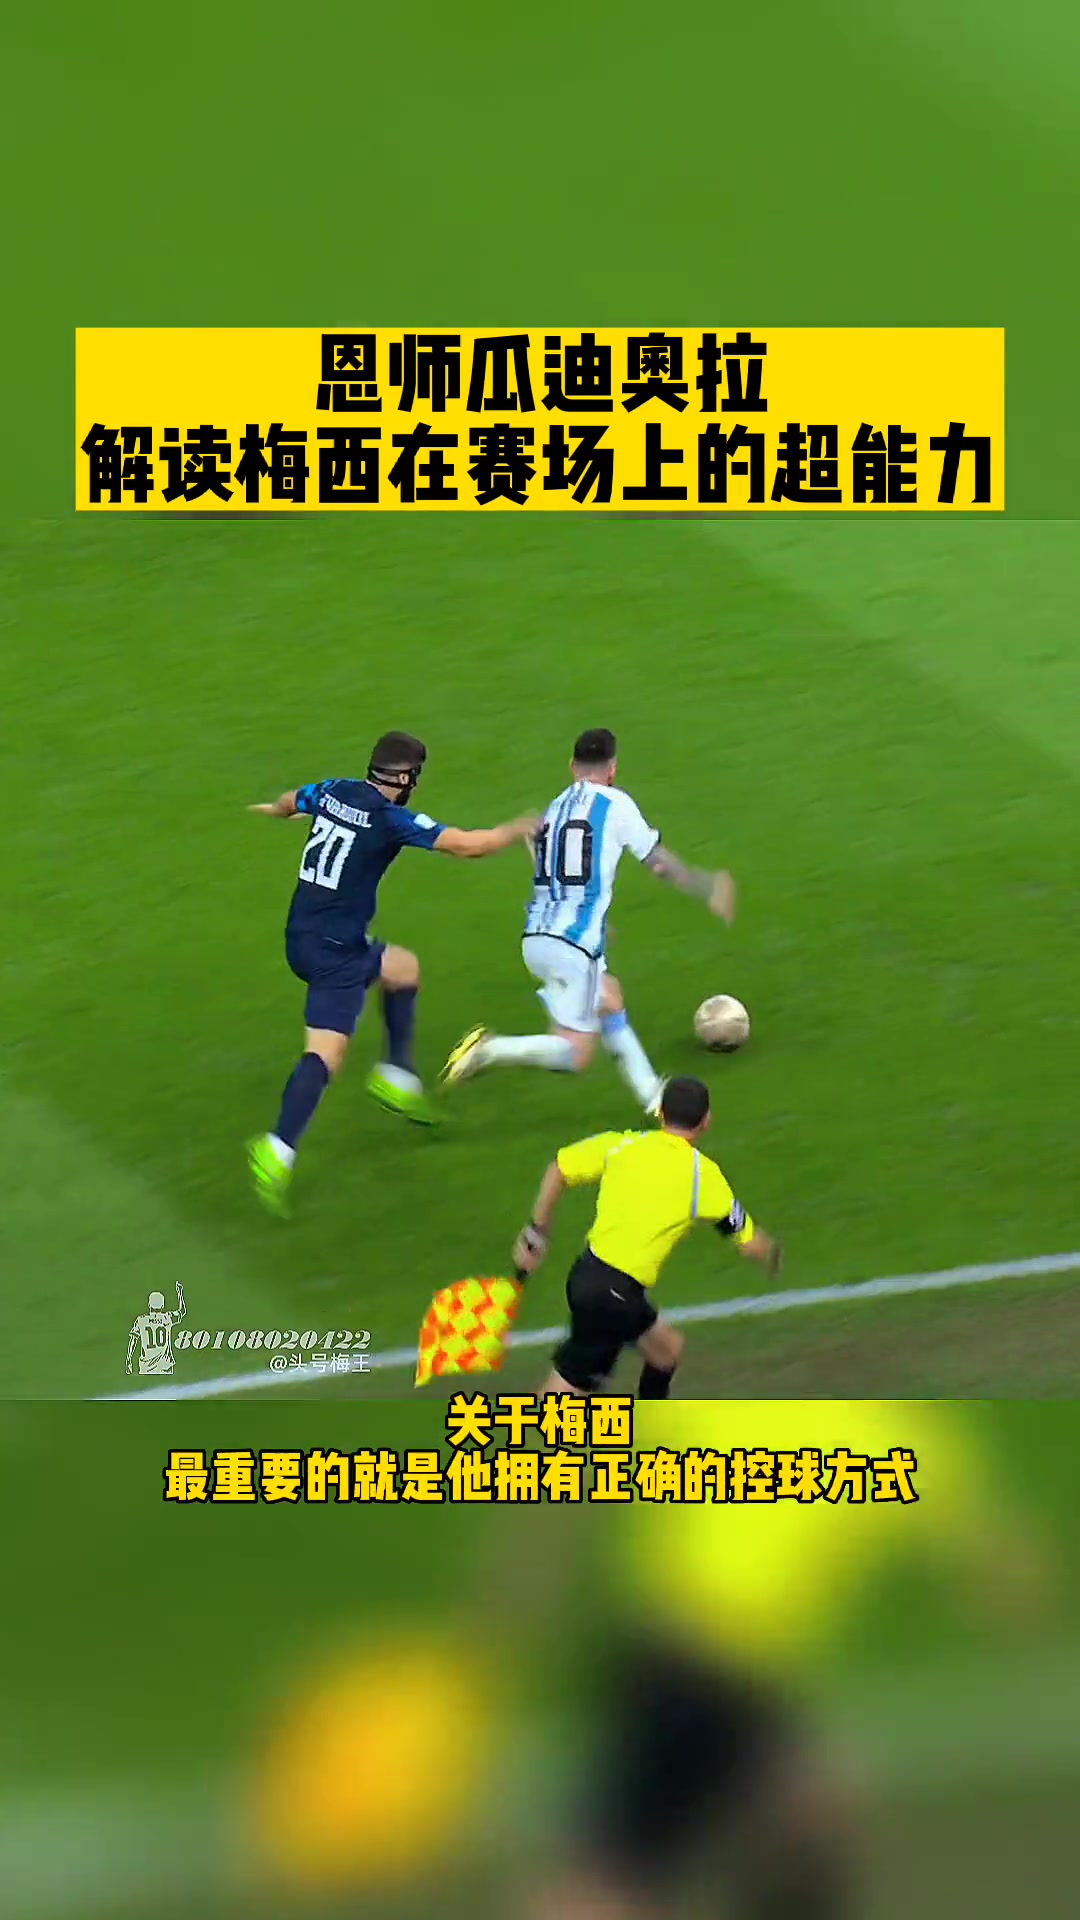  瓜迪奥拉解读梅西在足球场上的超能力:他总能嗅到进球!